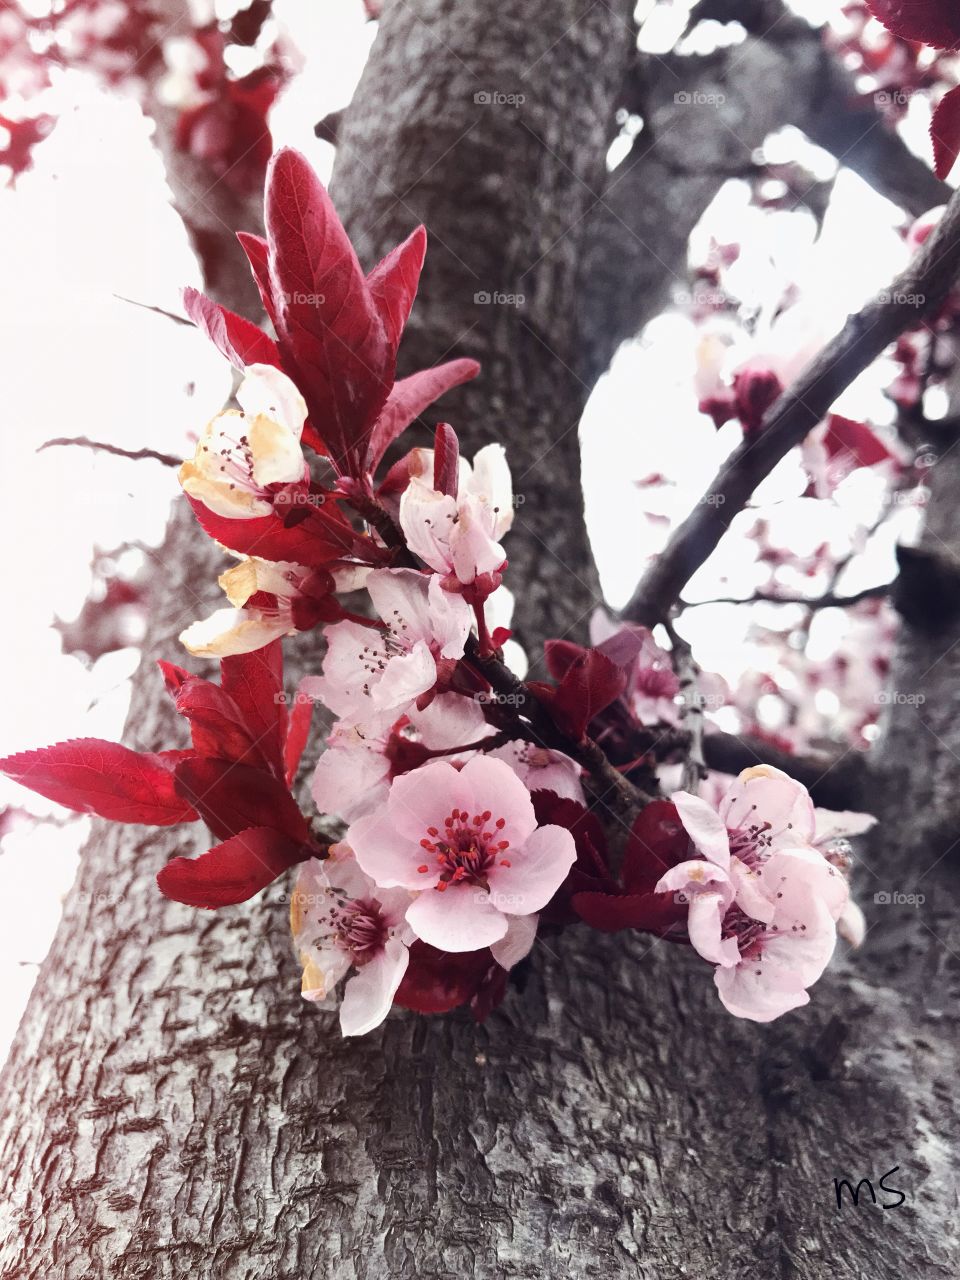 “Cherry Blossom” ¡me encanta esta flor! Absolutely beautiful! 